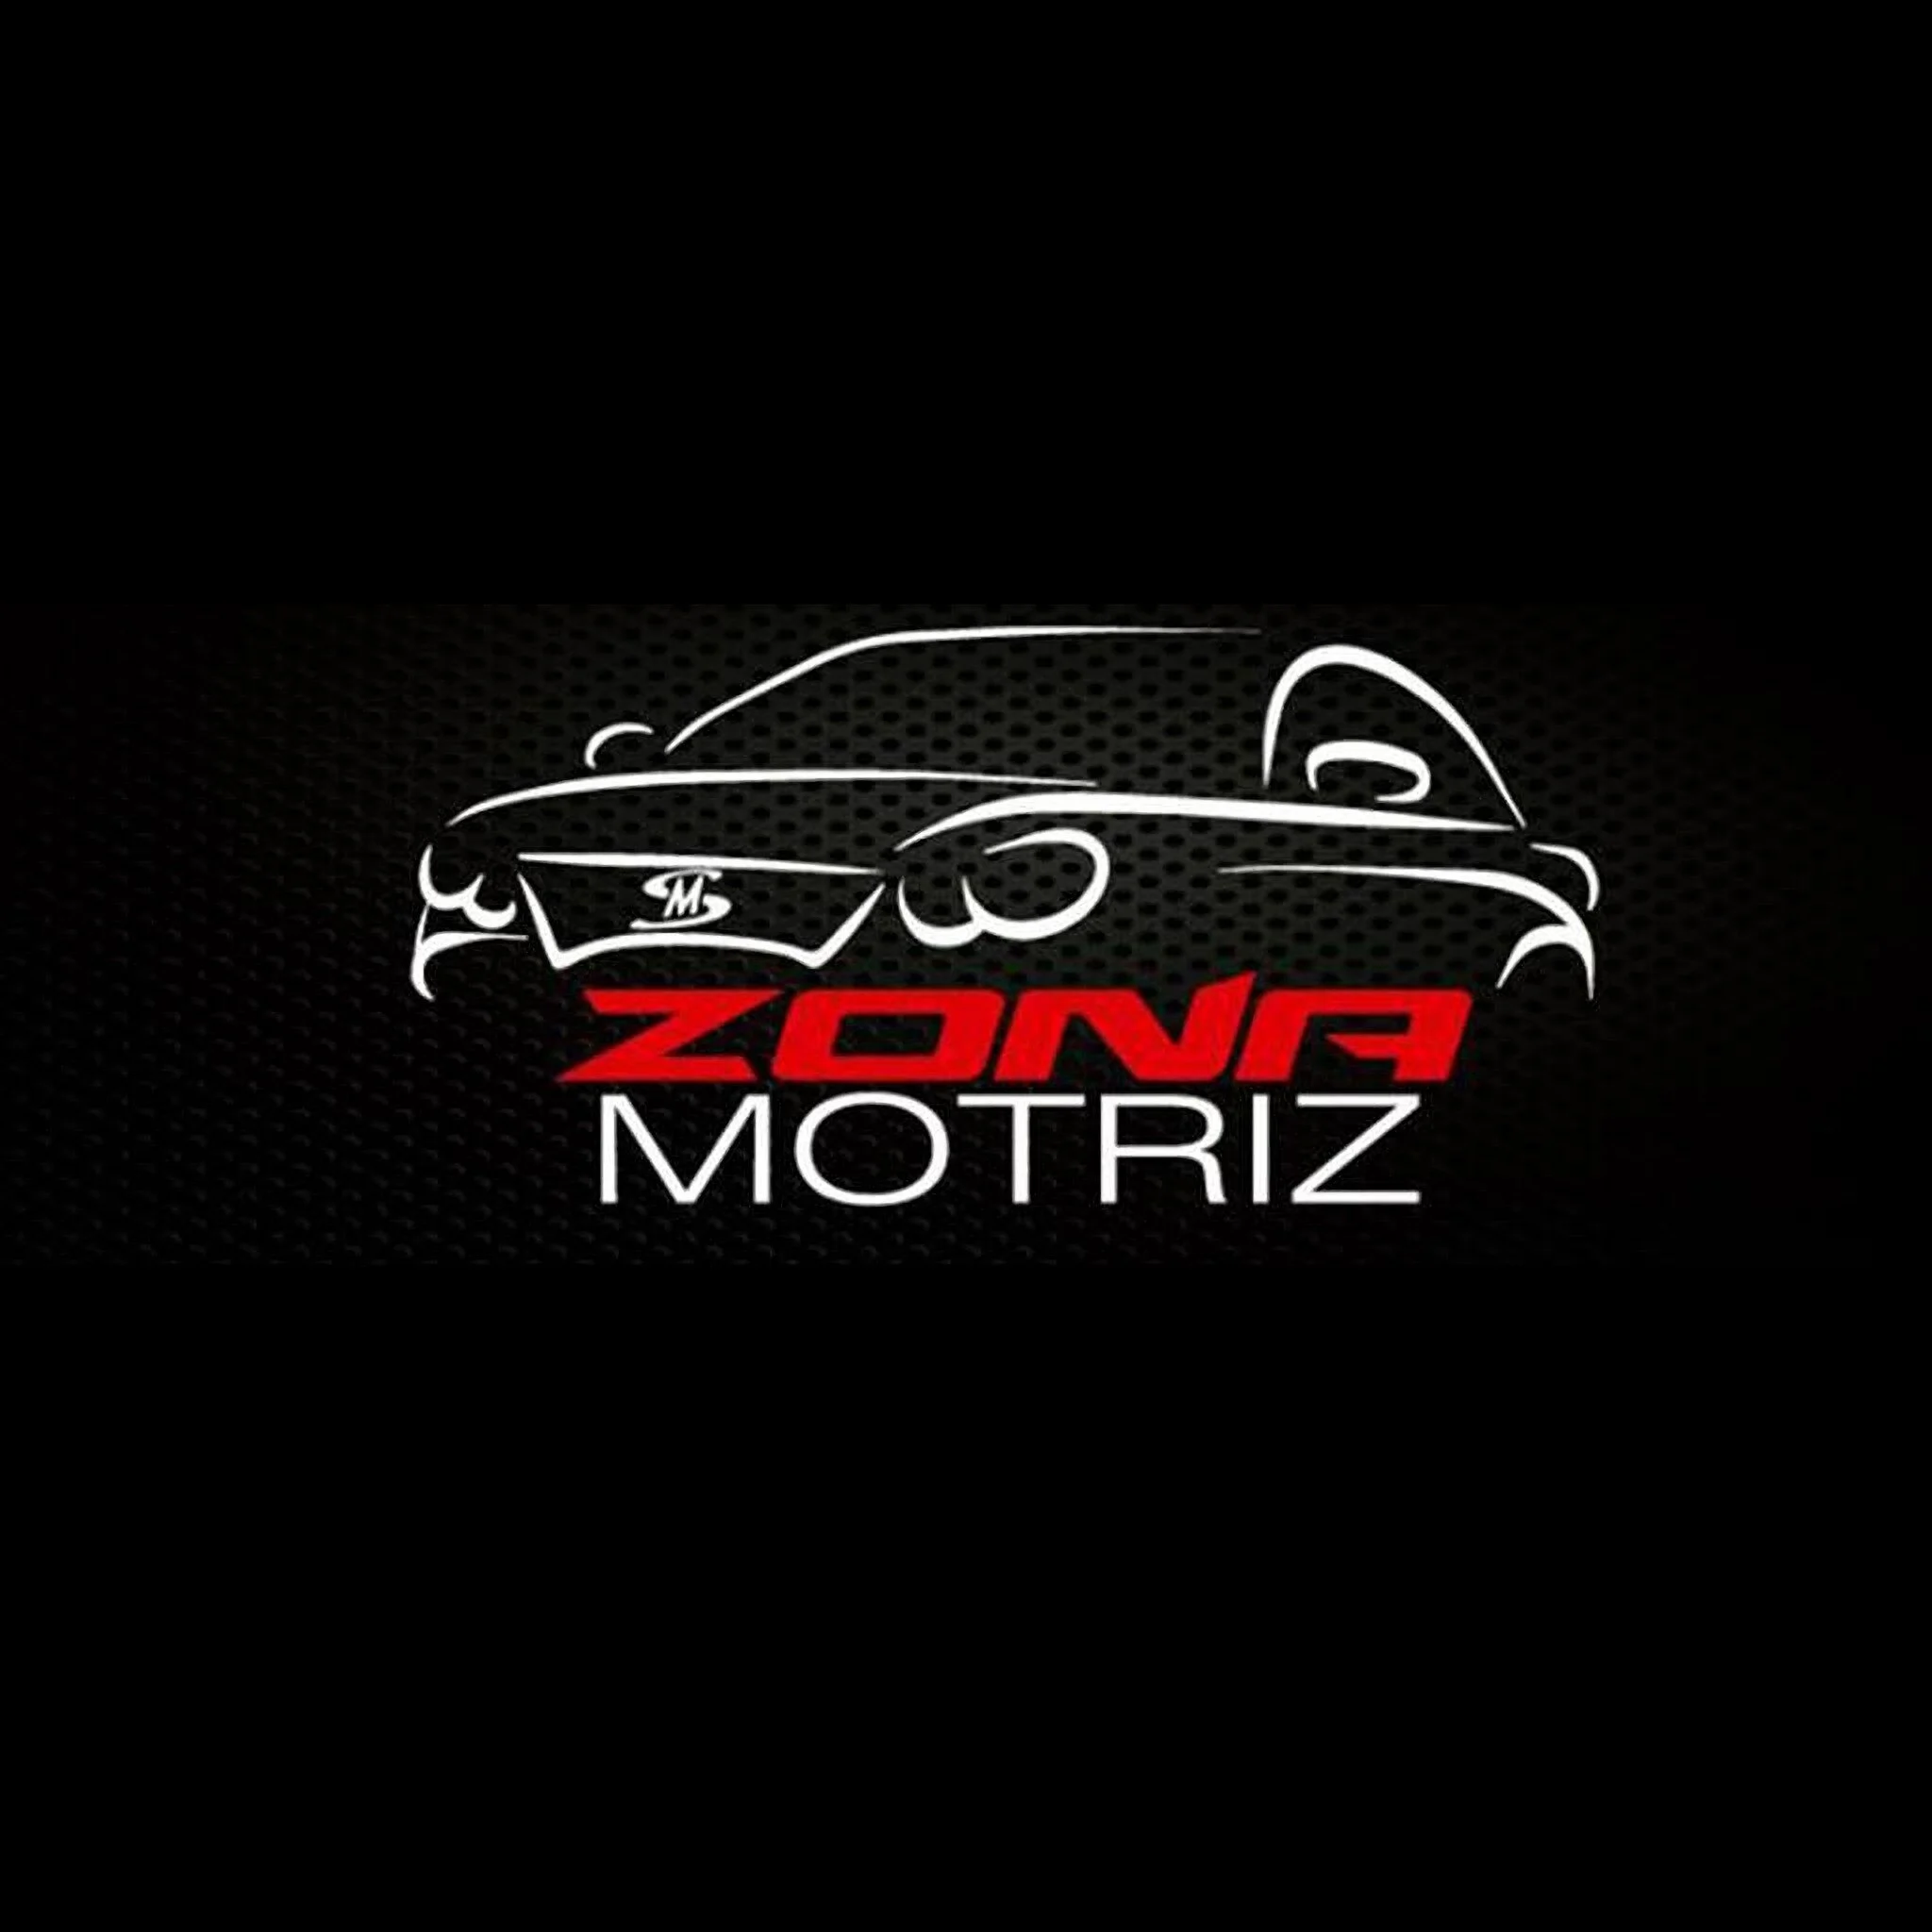 ZONA MOTRIZ MS-2714